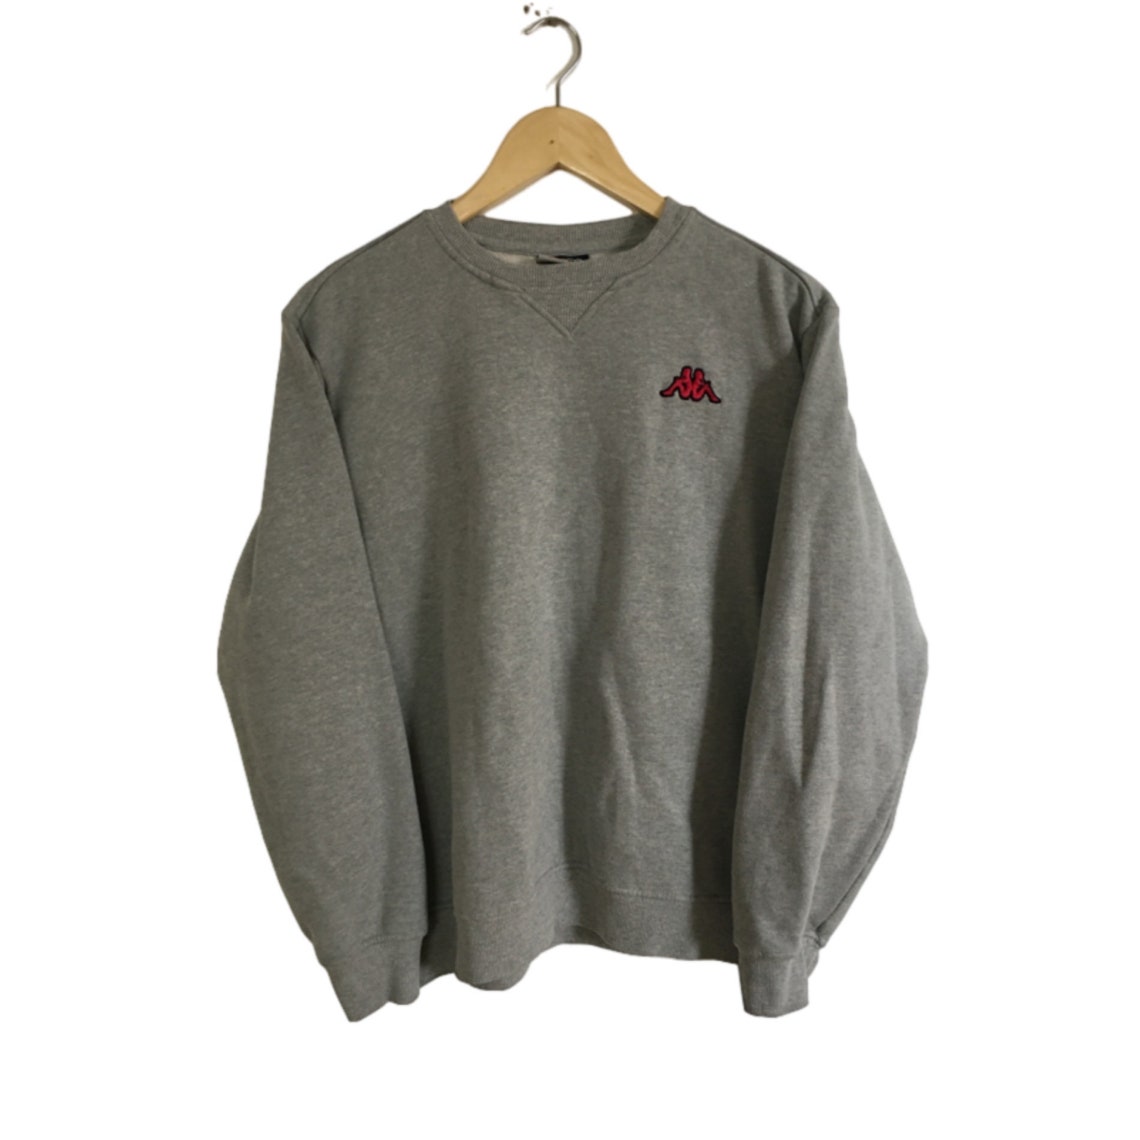 VINTAGE ultra rare KAPPA sweatshirt kappa pullover crewneck | Etsy